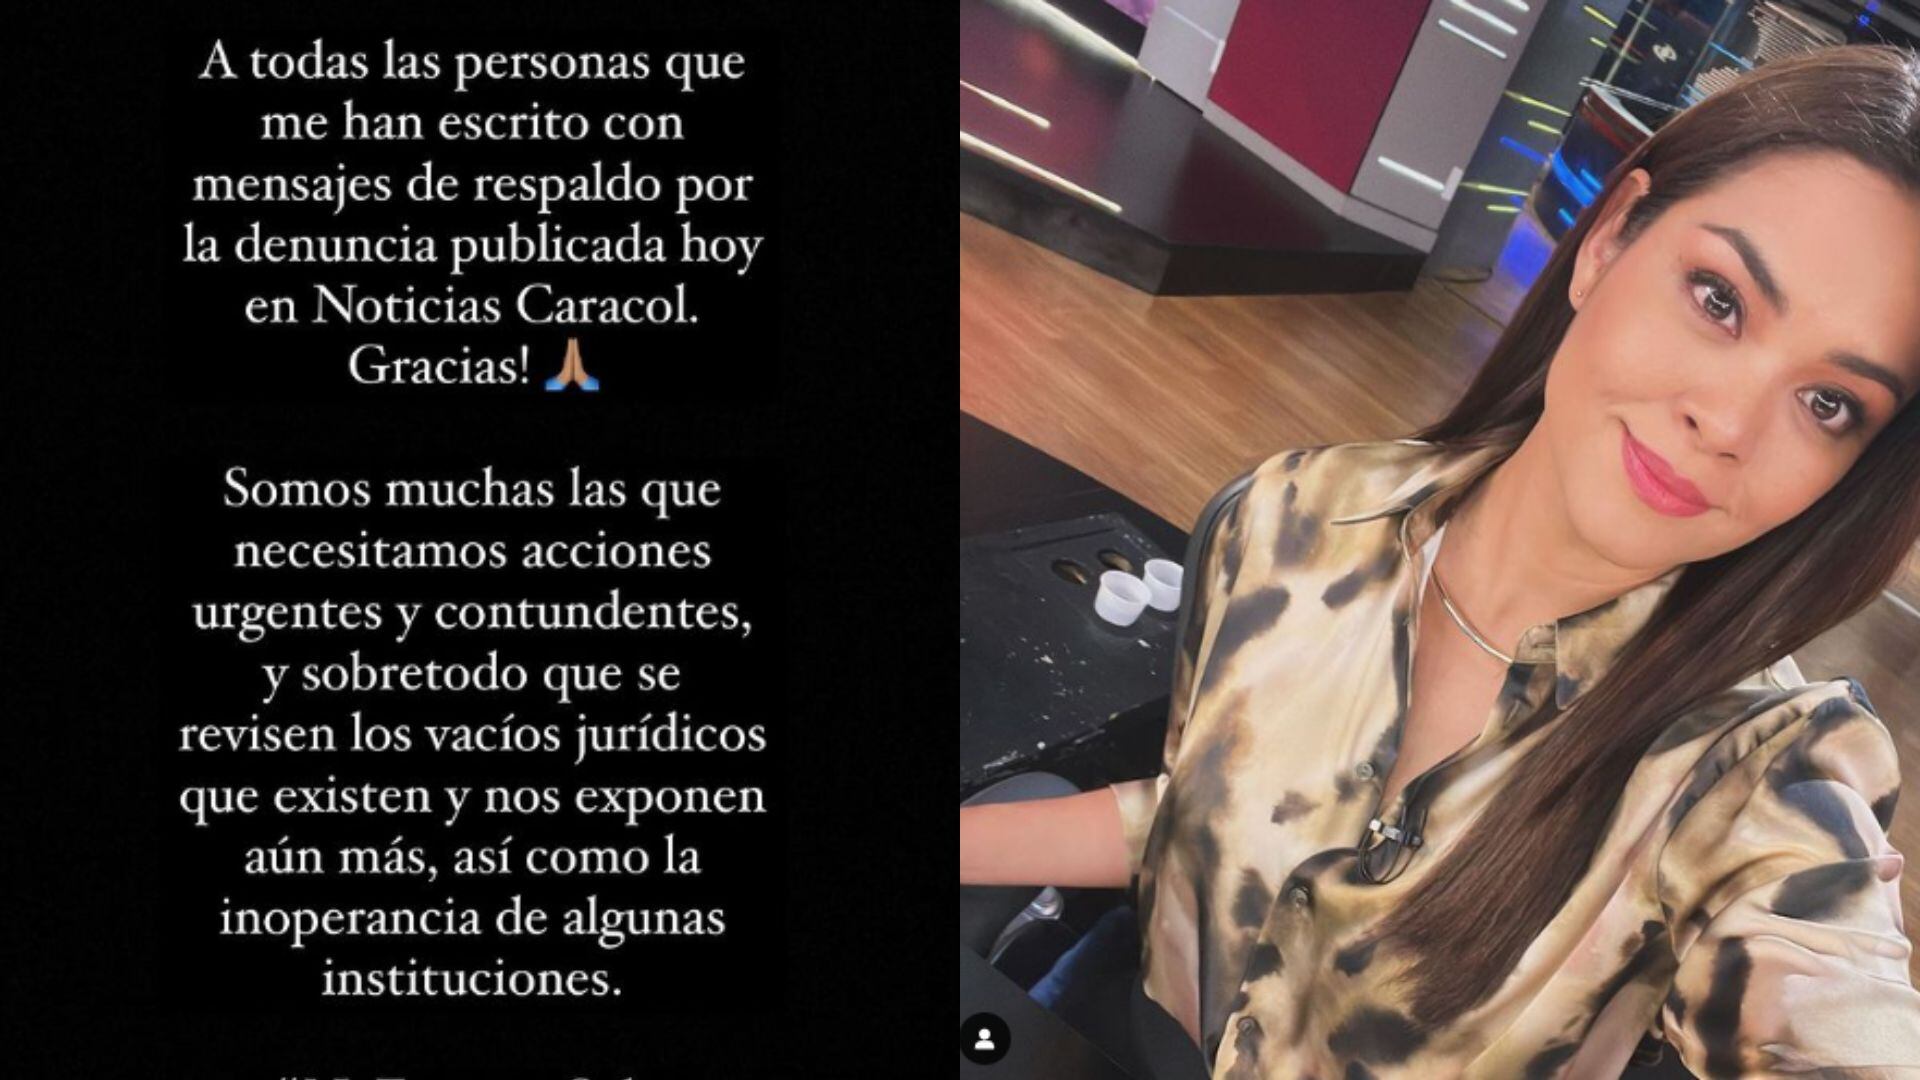 Alejandra Murgas de Noticias Caracol